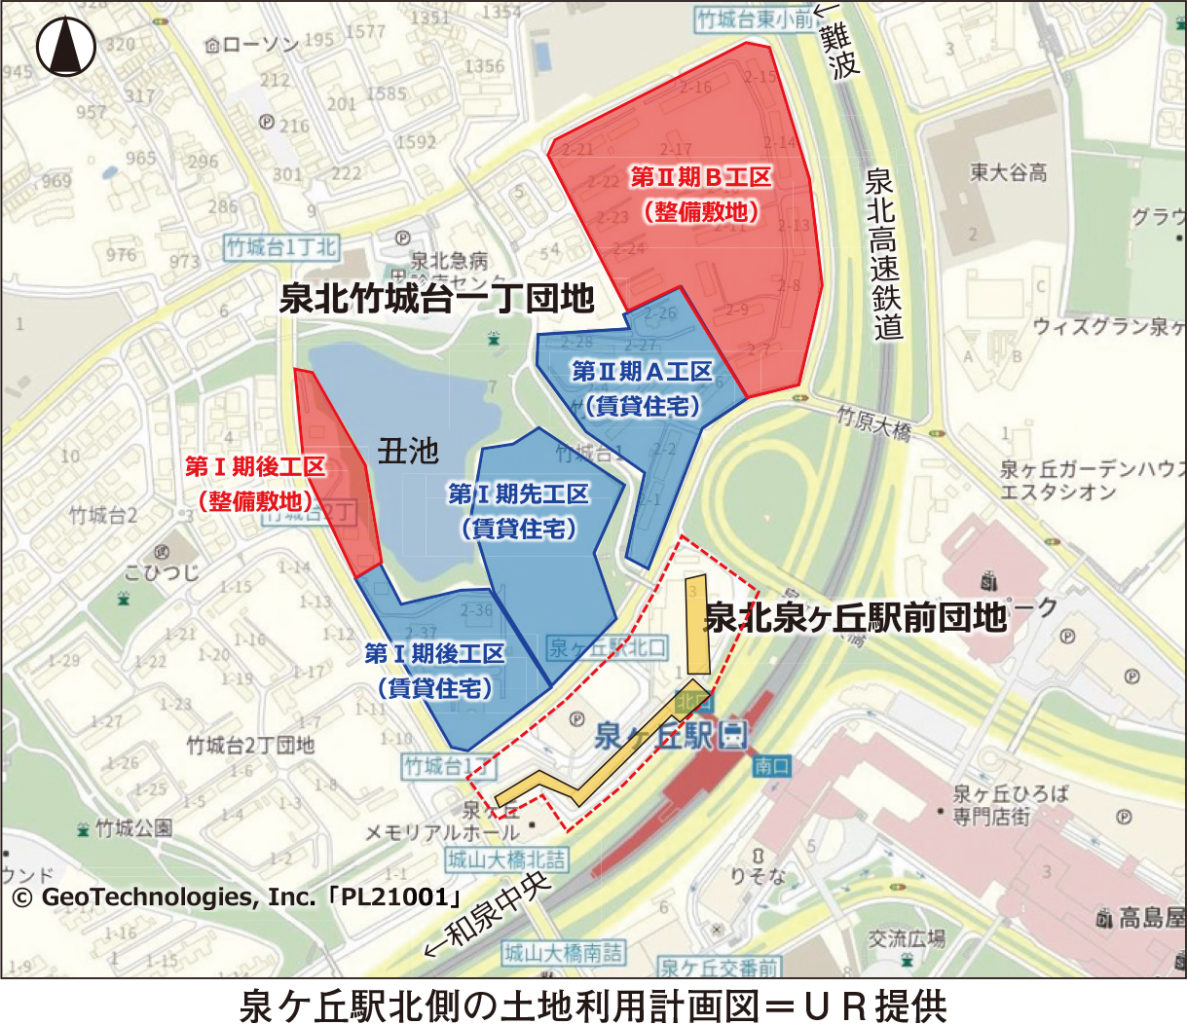 泉ケ丘駅北側の土地利用計画図